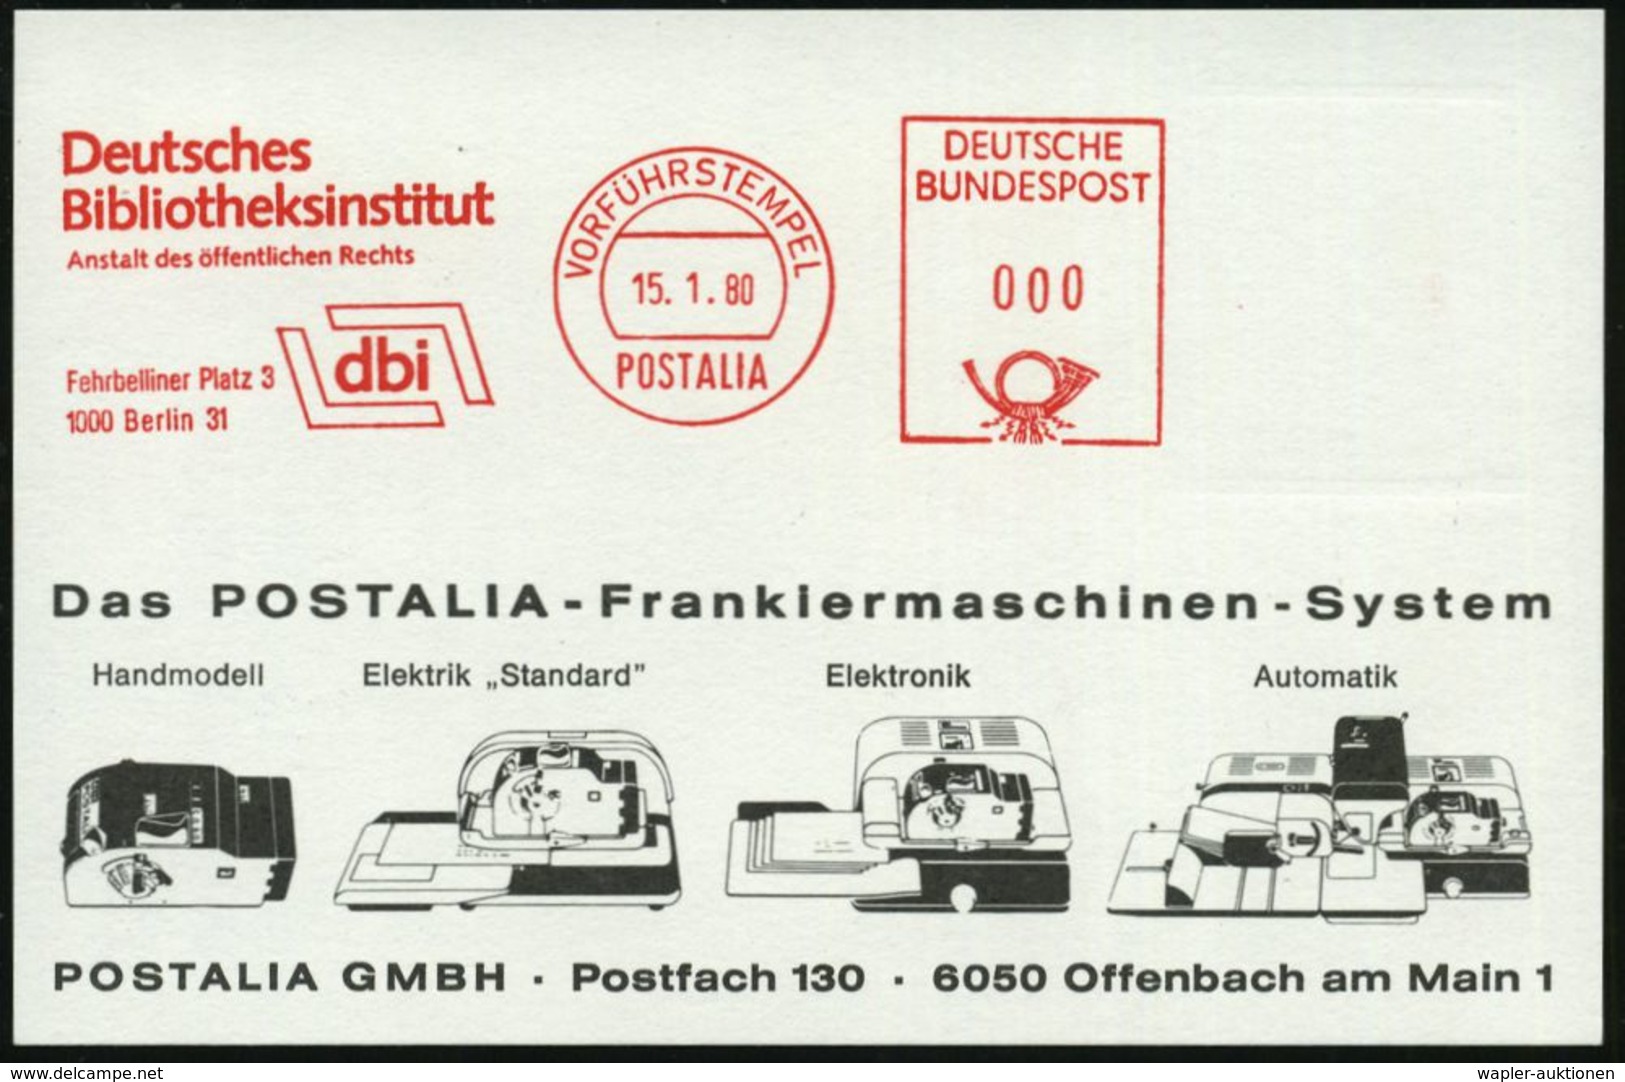 1000 Berlin 31 1980 (Jan.) AFS: VORFÜHRSTEMPEL/POSTALIA/Deutsches/Bibliotheksinstitut/dbi/Fehrbelliner Platz 3.. (Logo)  - Non Classificati